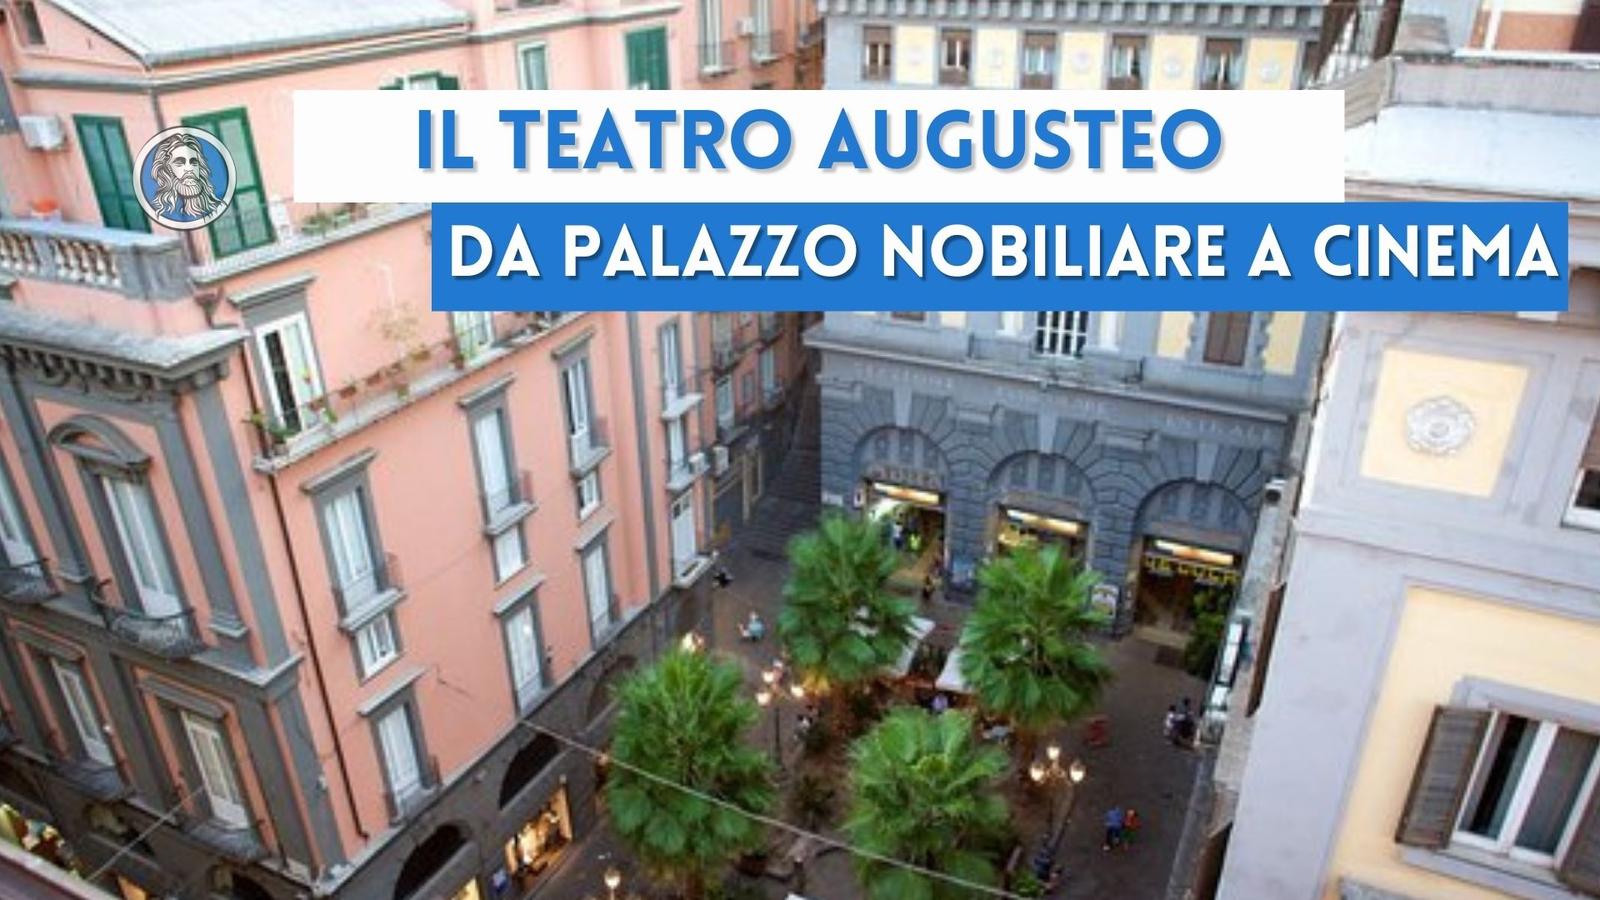 Storia del Teatro Augusteo: da palazzo nobiliare a cinema